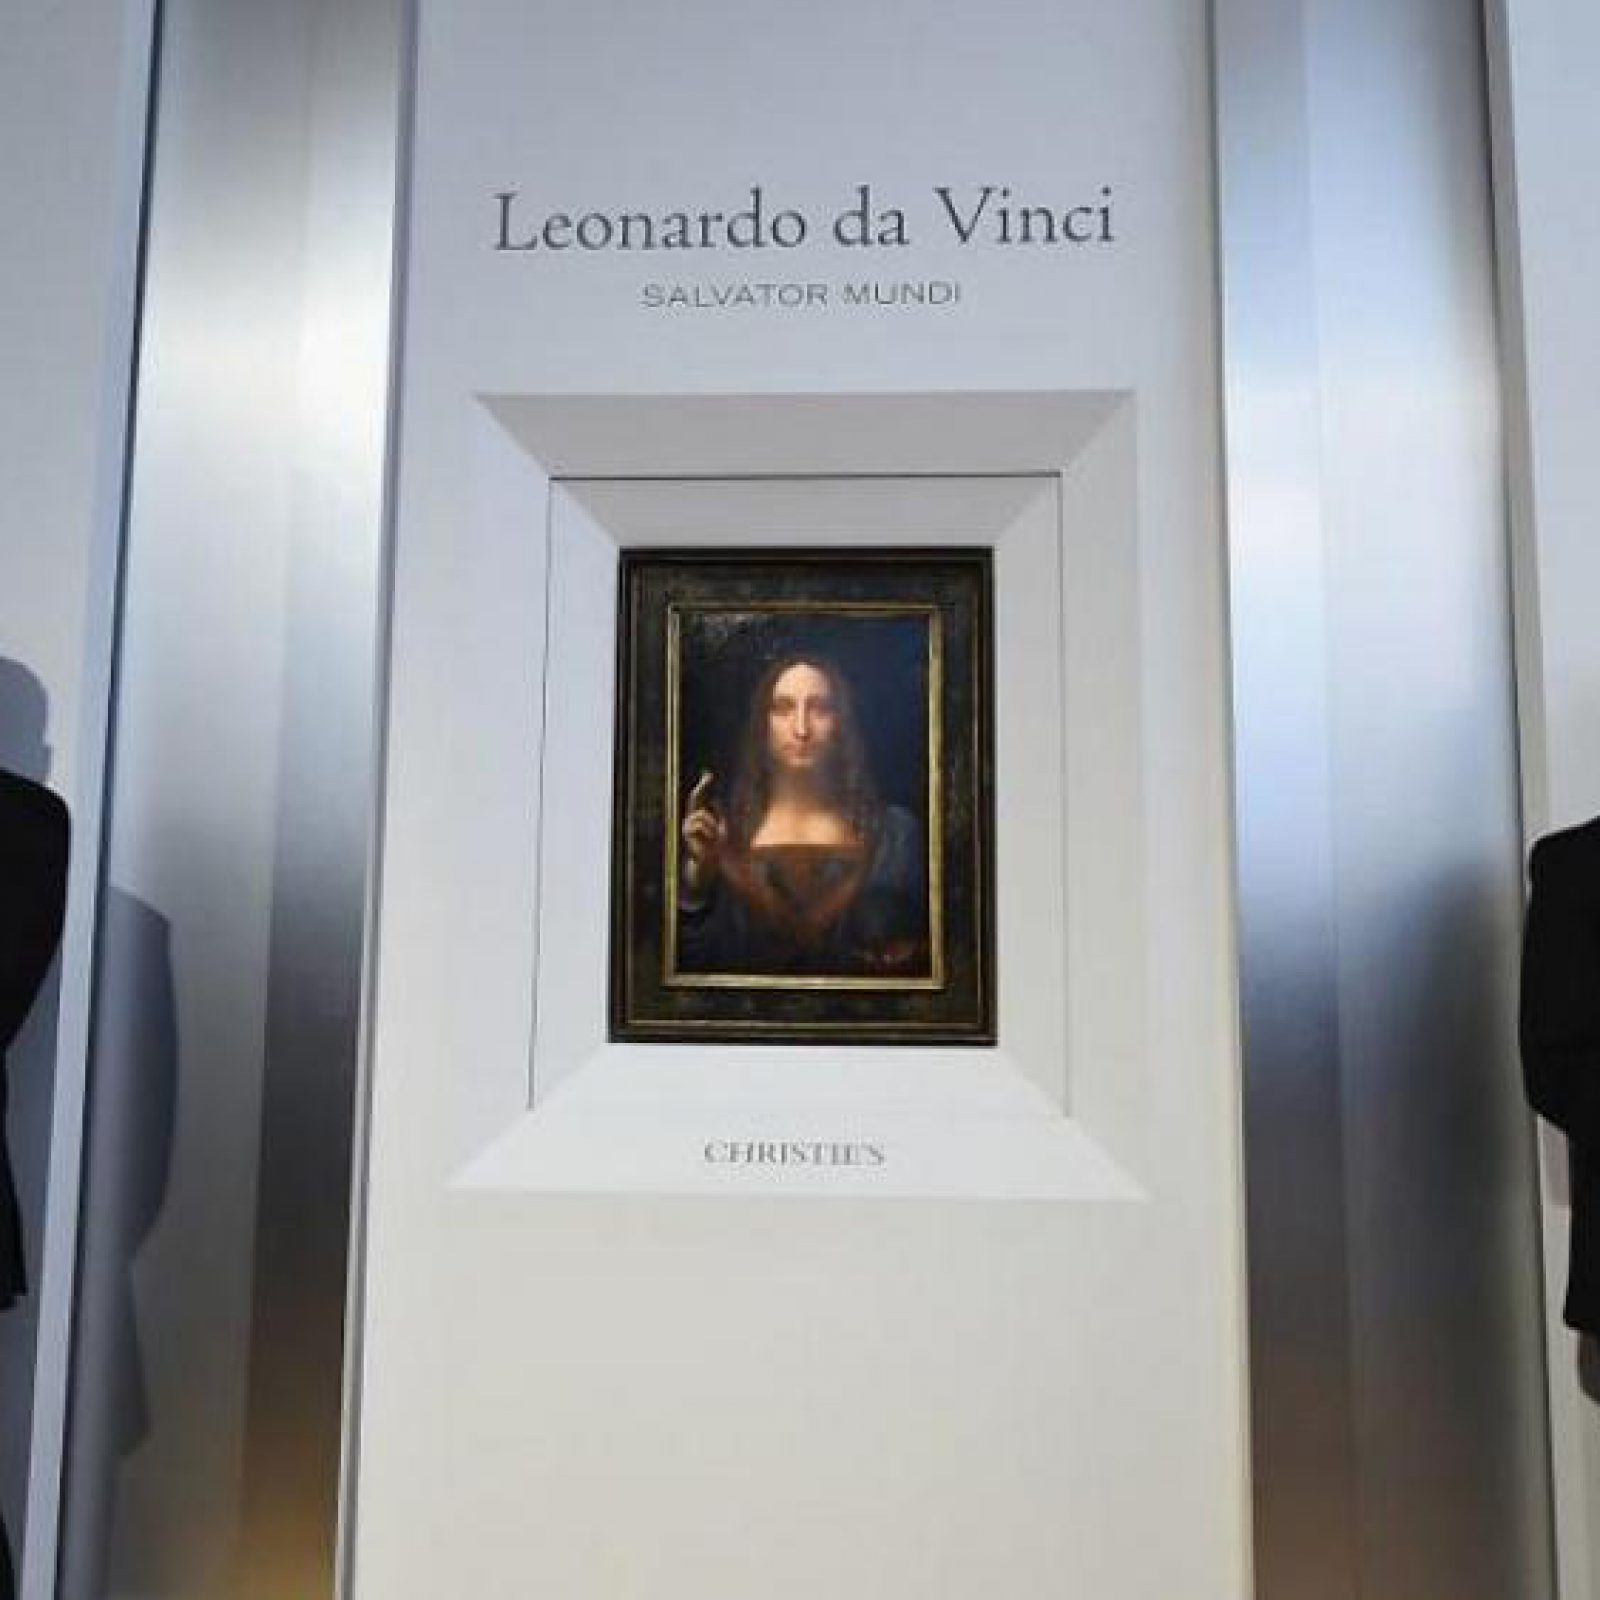 Salvator Mundi, un excepcional óleo del maestro renacentista Leonardo da Vinci, se remató anoche en una subasta de la casa Christie’s de Nueva York por la cifra récord de 450,3 millones de dólares